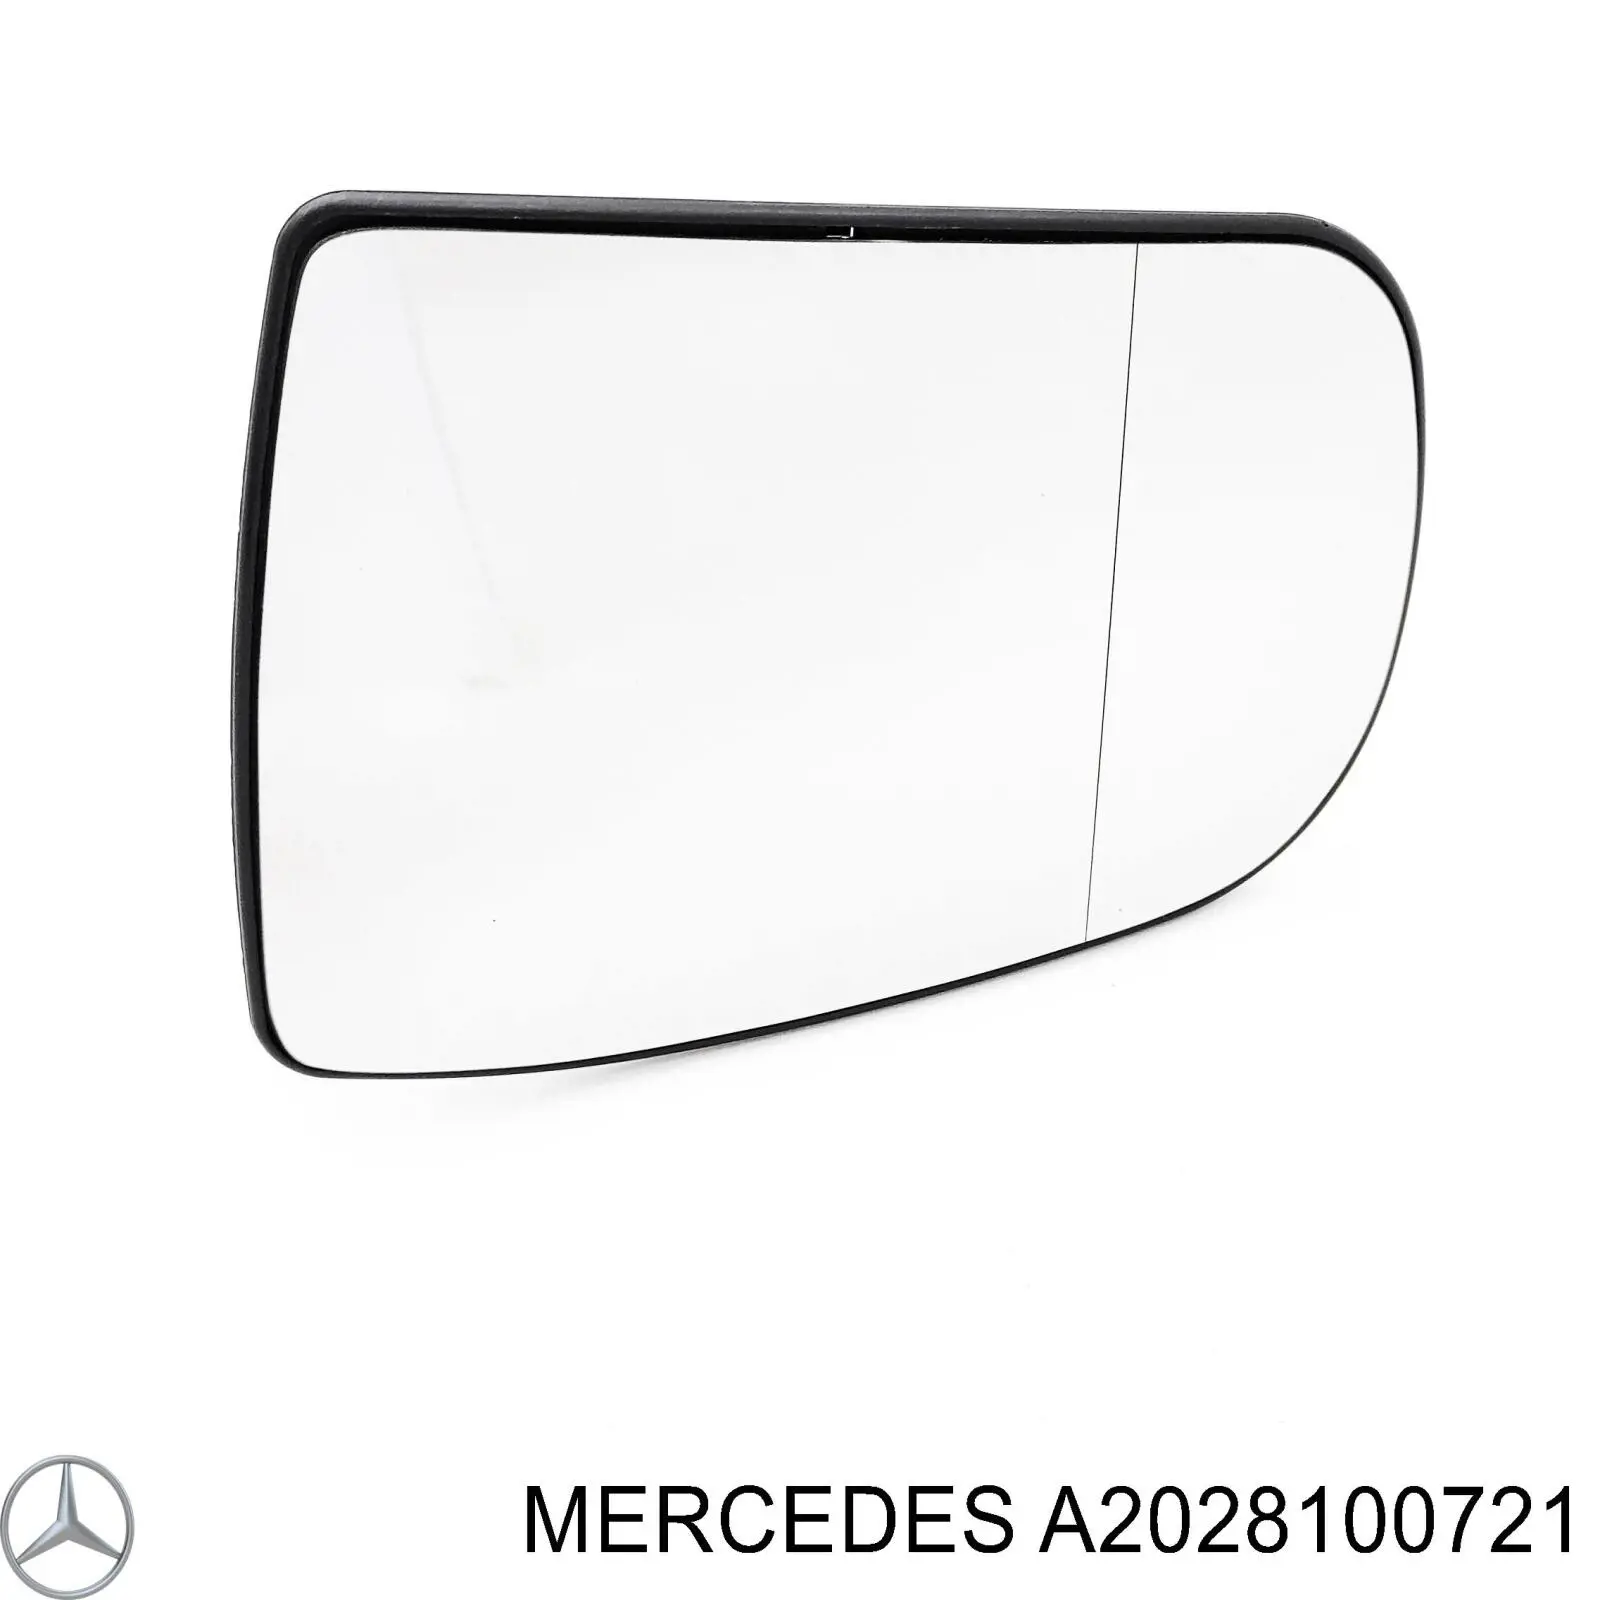 A2028100321 Mercedes cristal de espejo retrovisor exterior izquierdo